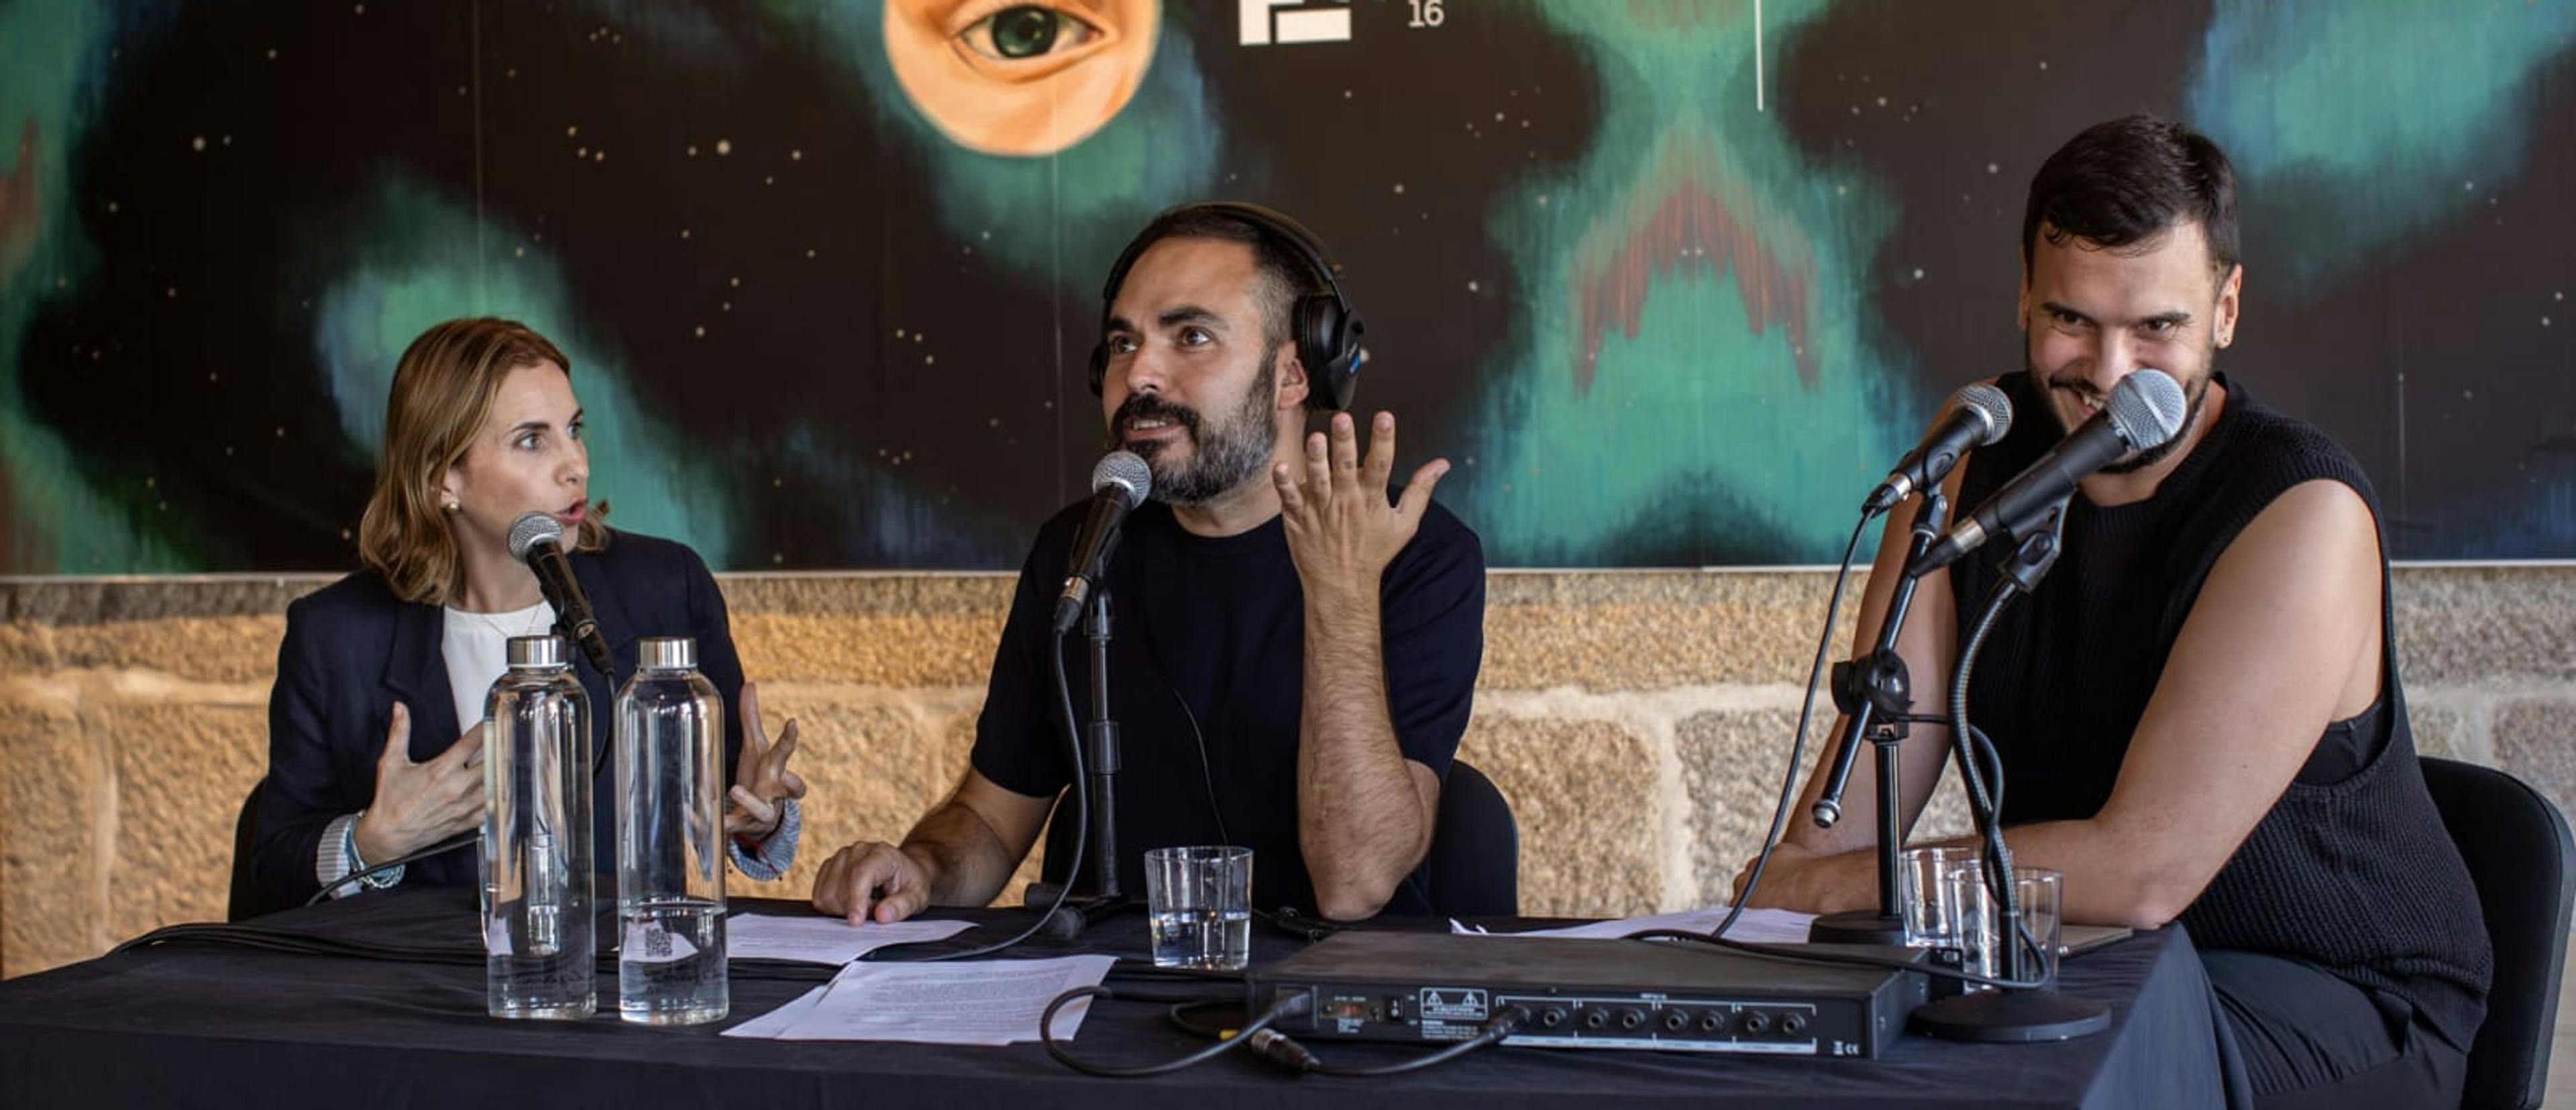 Alejandra Musi, David Martos y Luis Fernández, durante la grabación de Kinótico en el Festival Internacional de Cine de Bueu